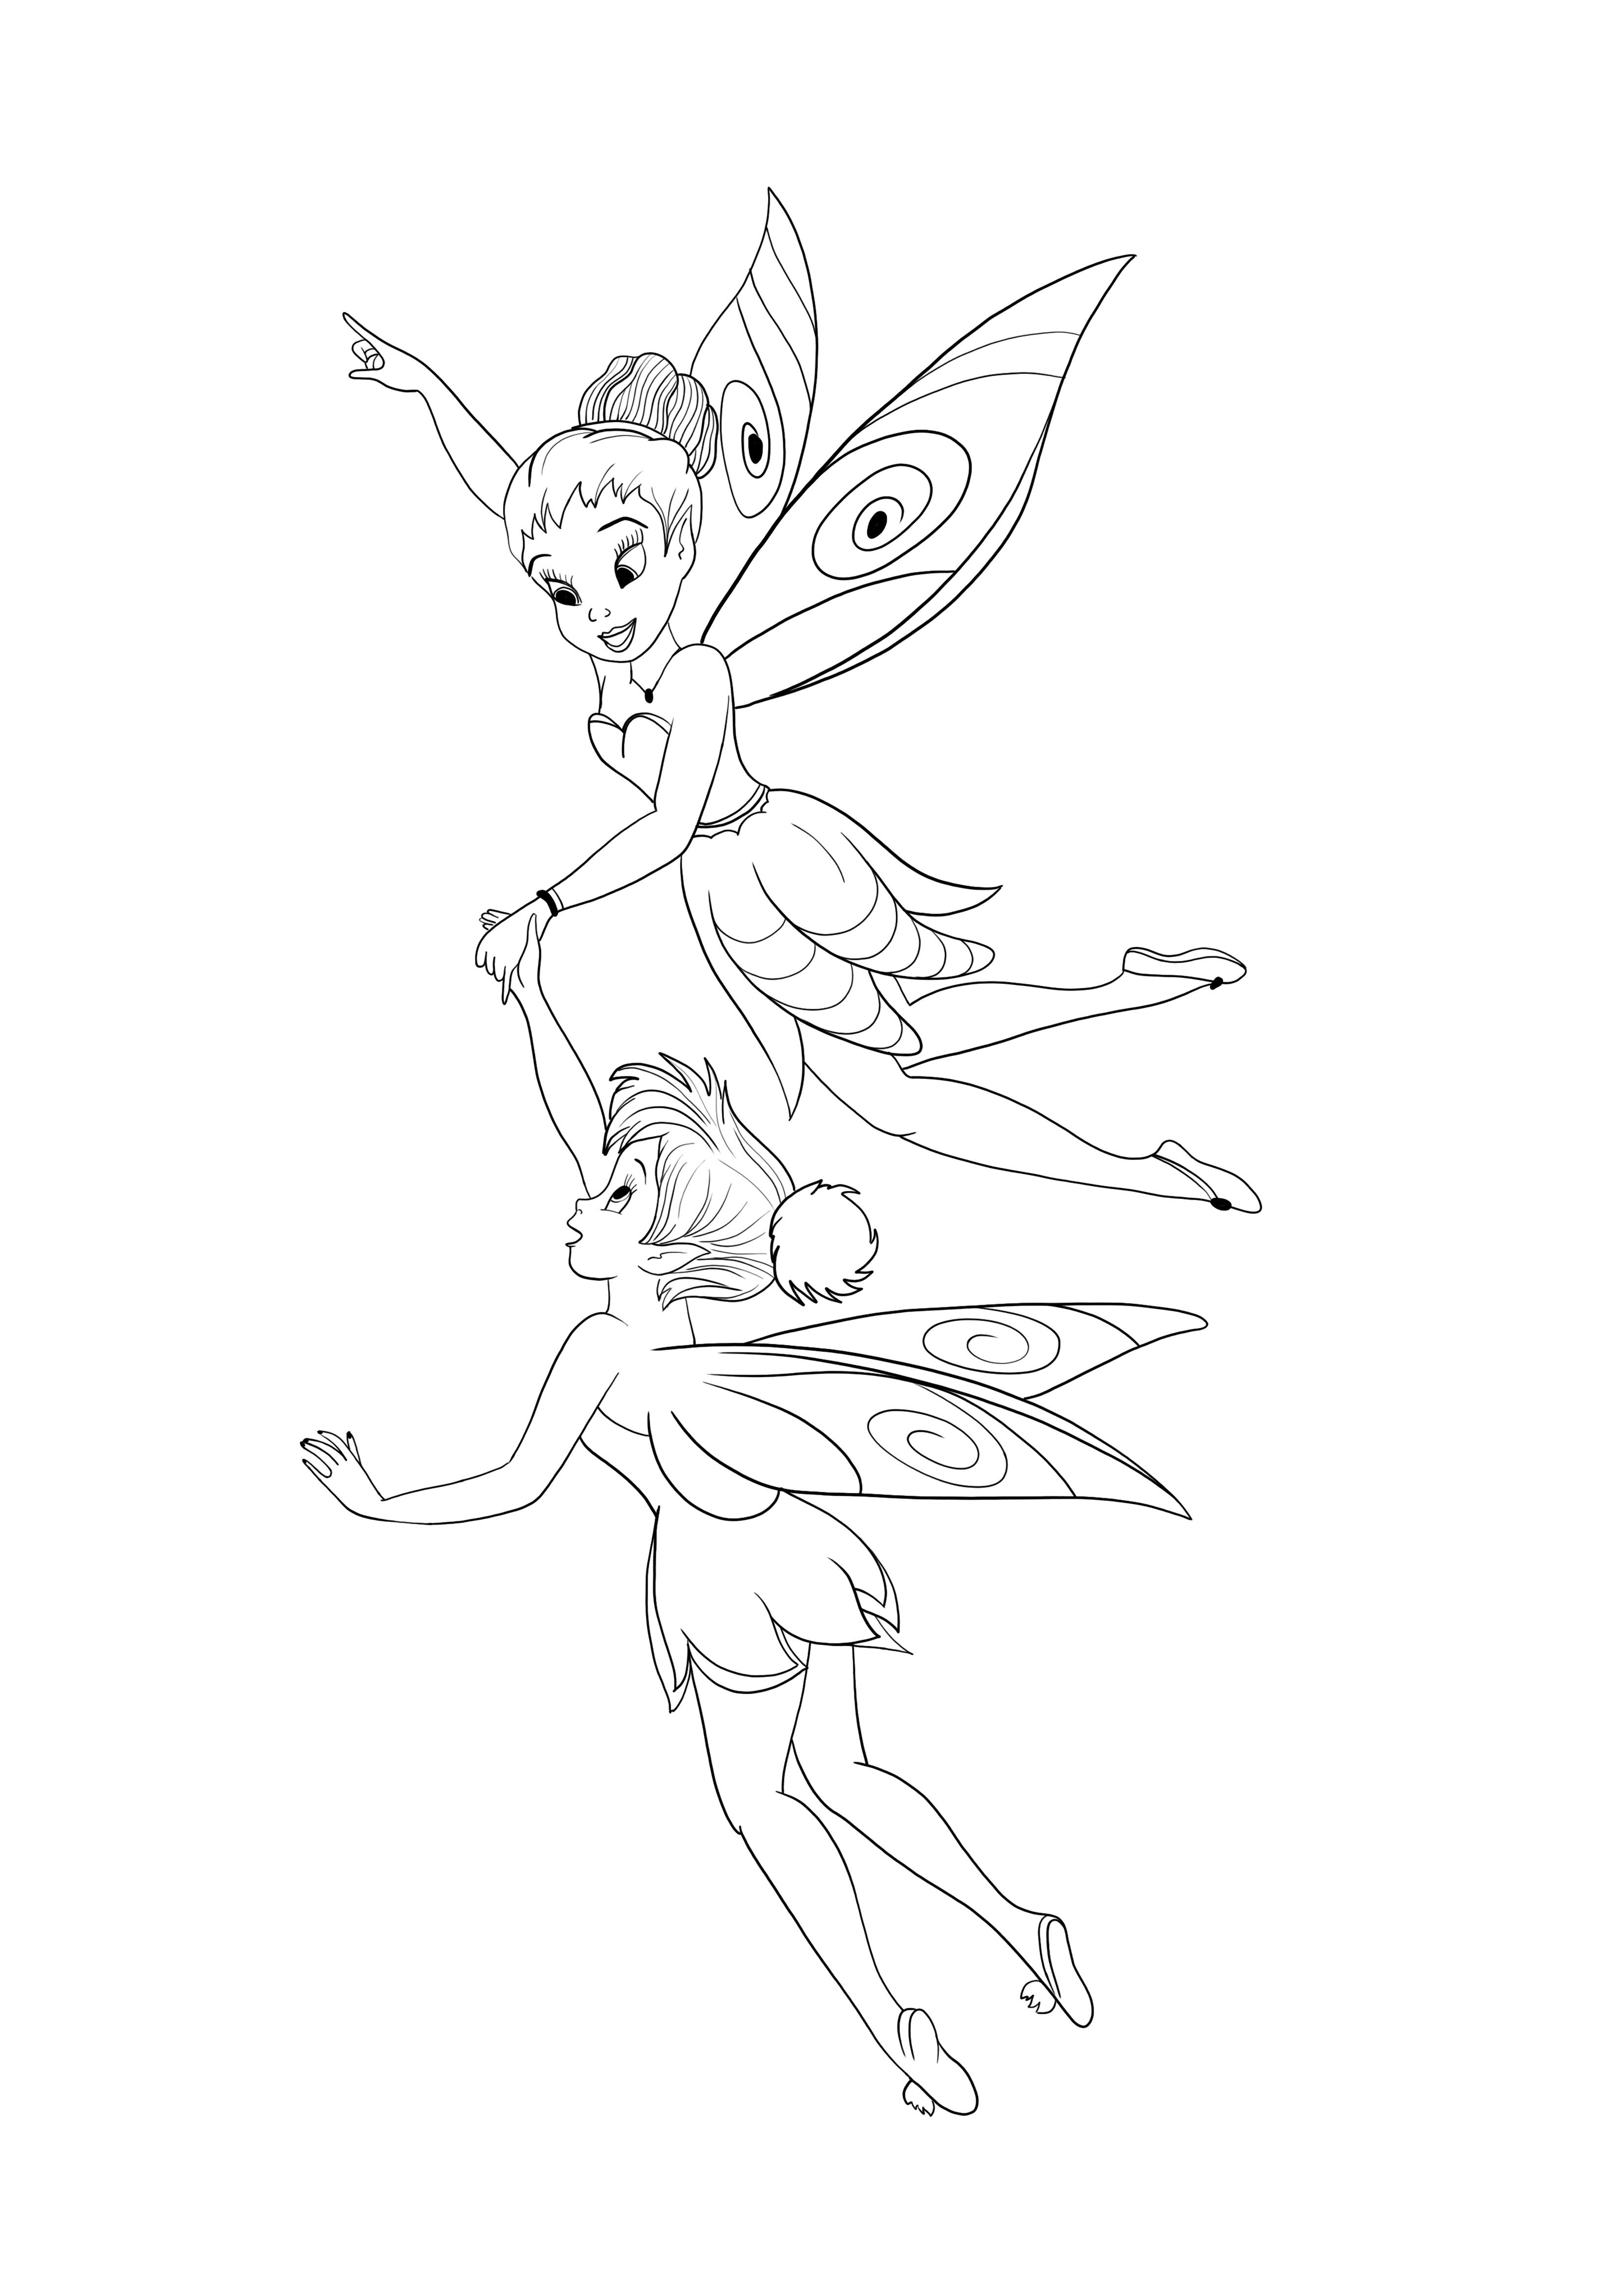 Tinkerbell și Iridessa zburând desen de colorat și imprimare gratuită